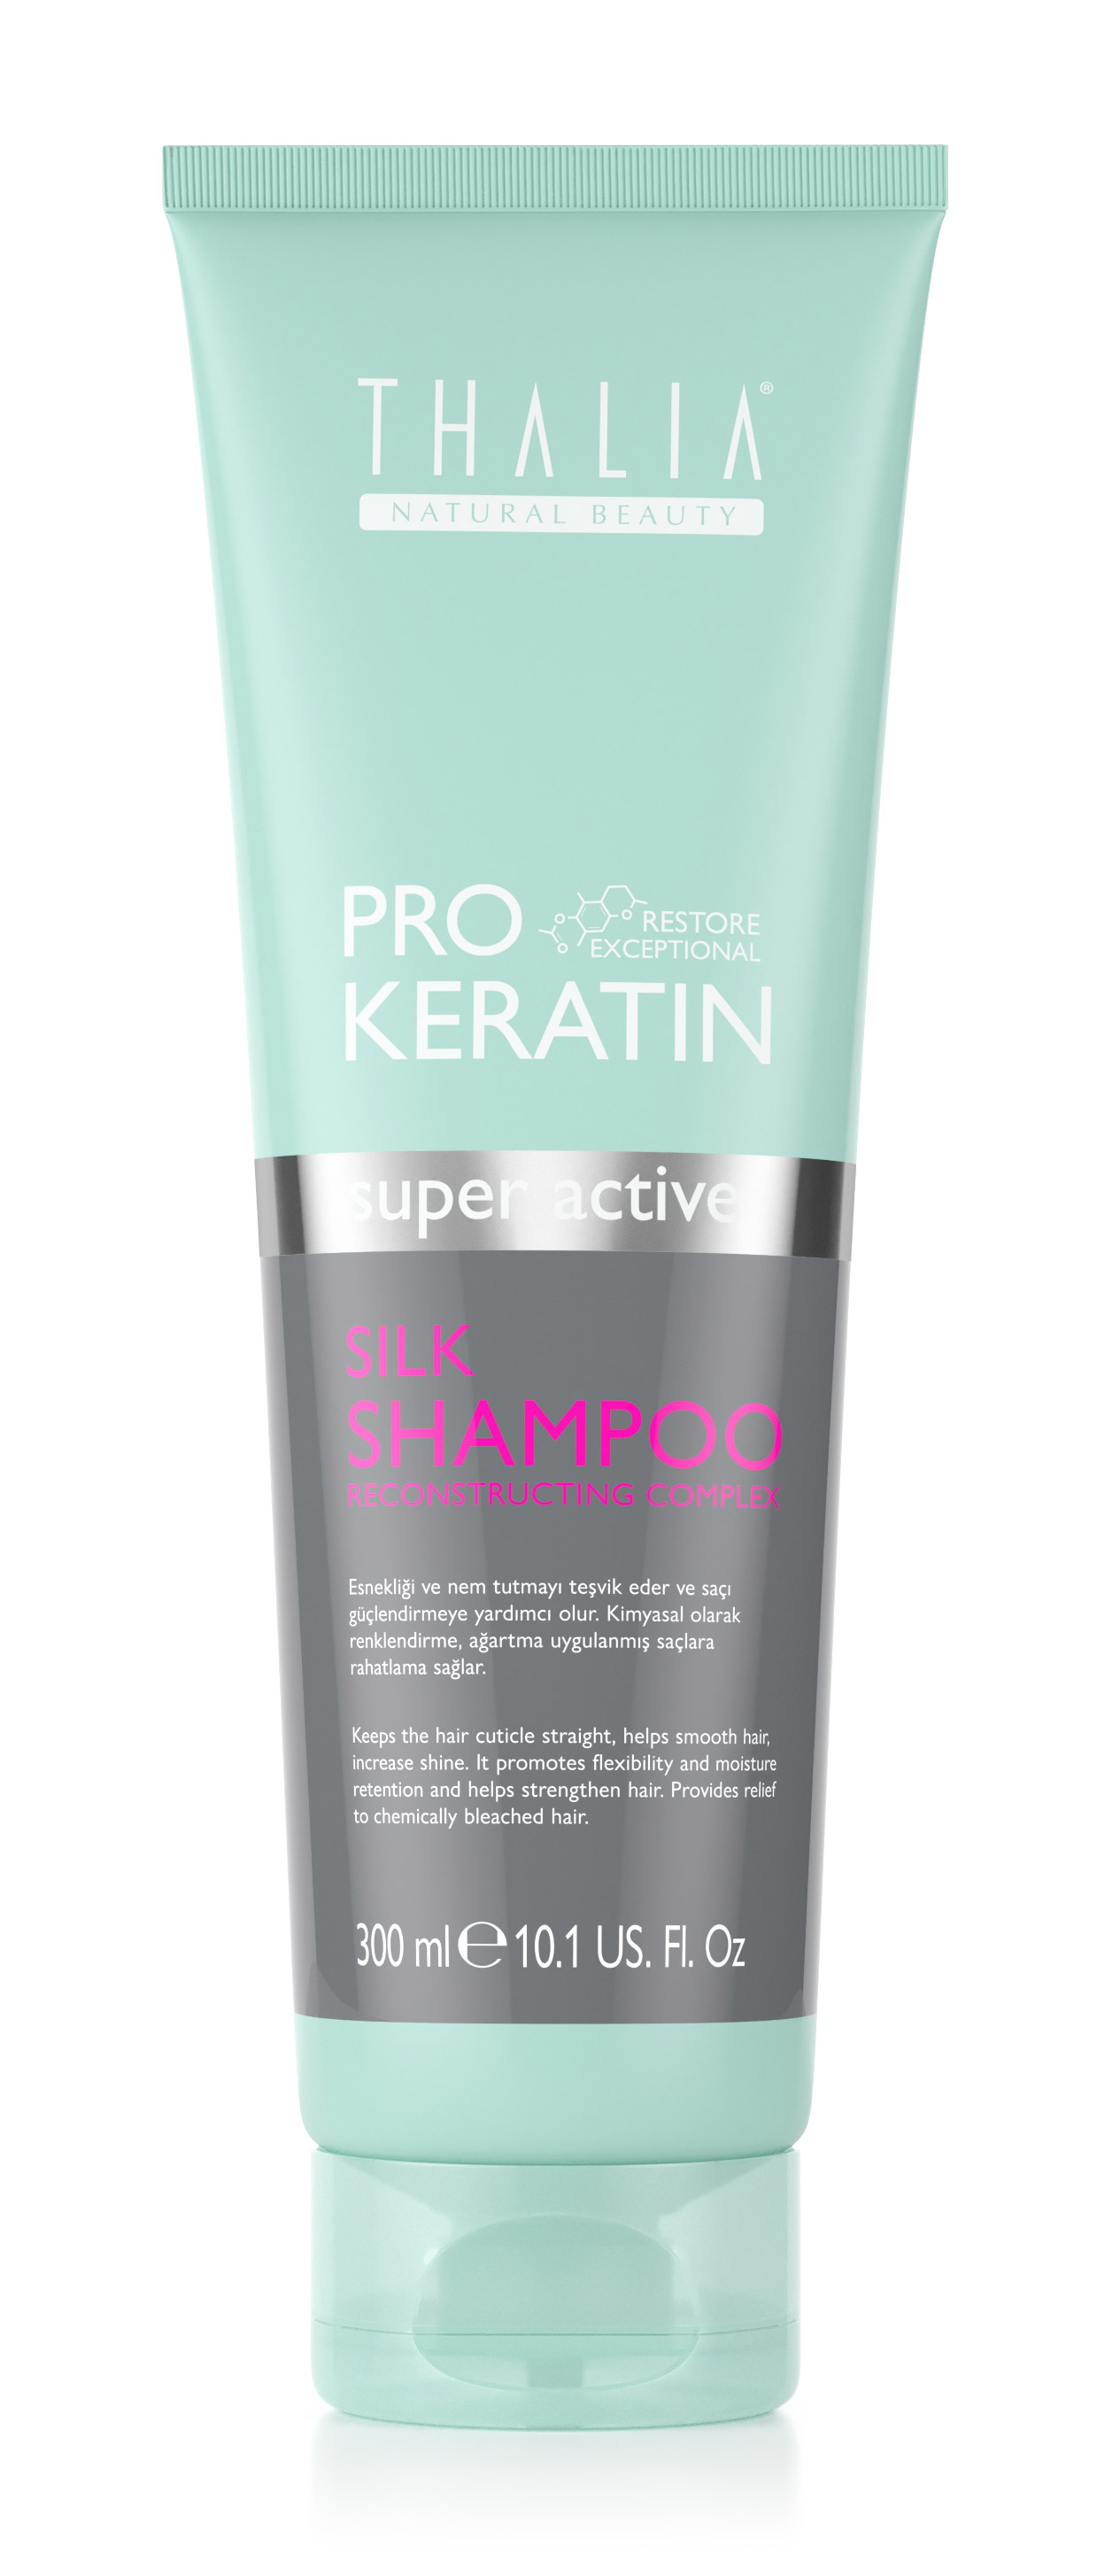 PRO-KERATIN Silk Shampoo 300ml - schnelleres Haarwachstum